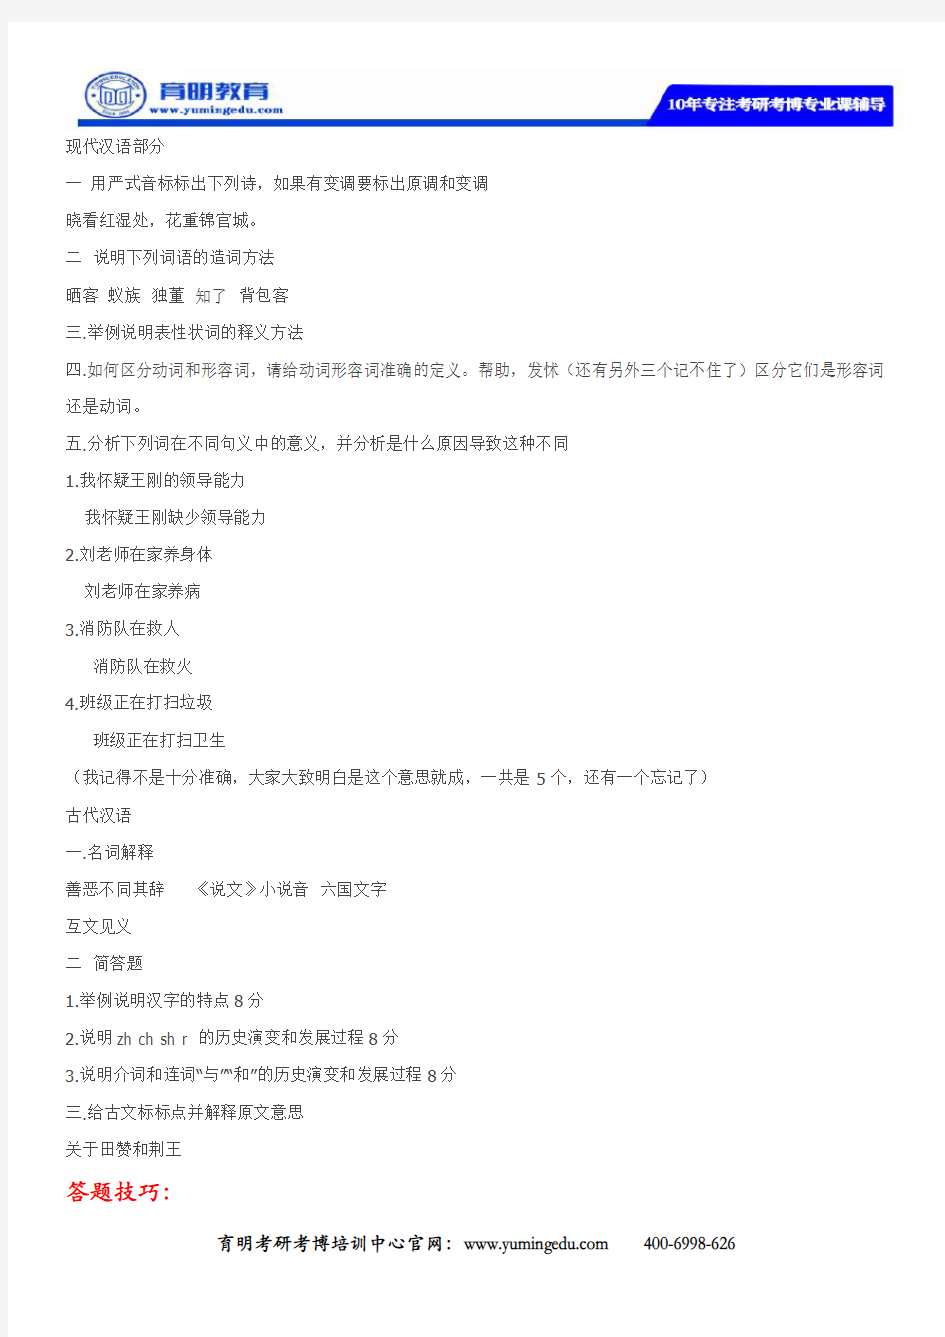 2020年北京大学汉语言文学考研真题(回忆版)及考研参考书